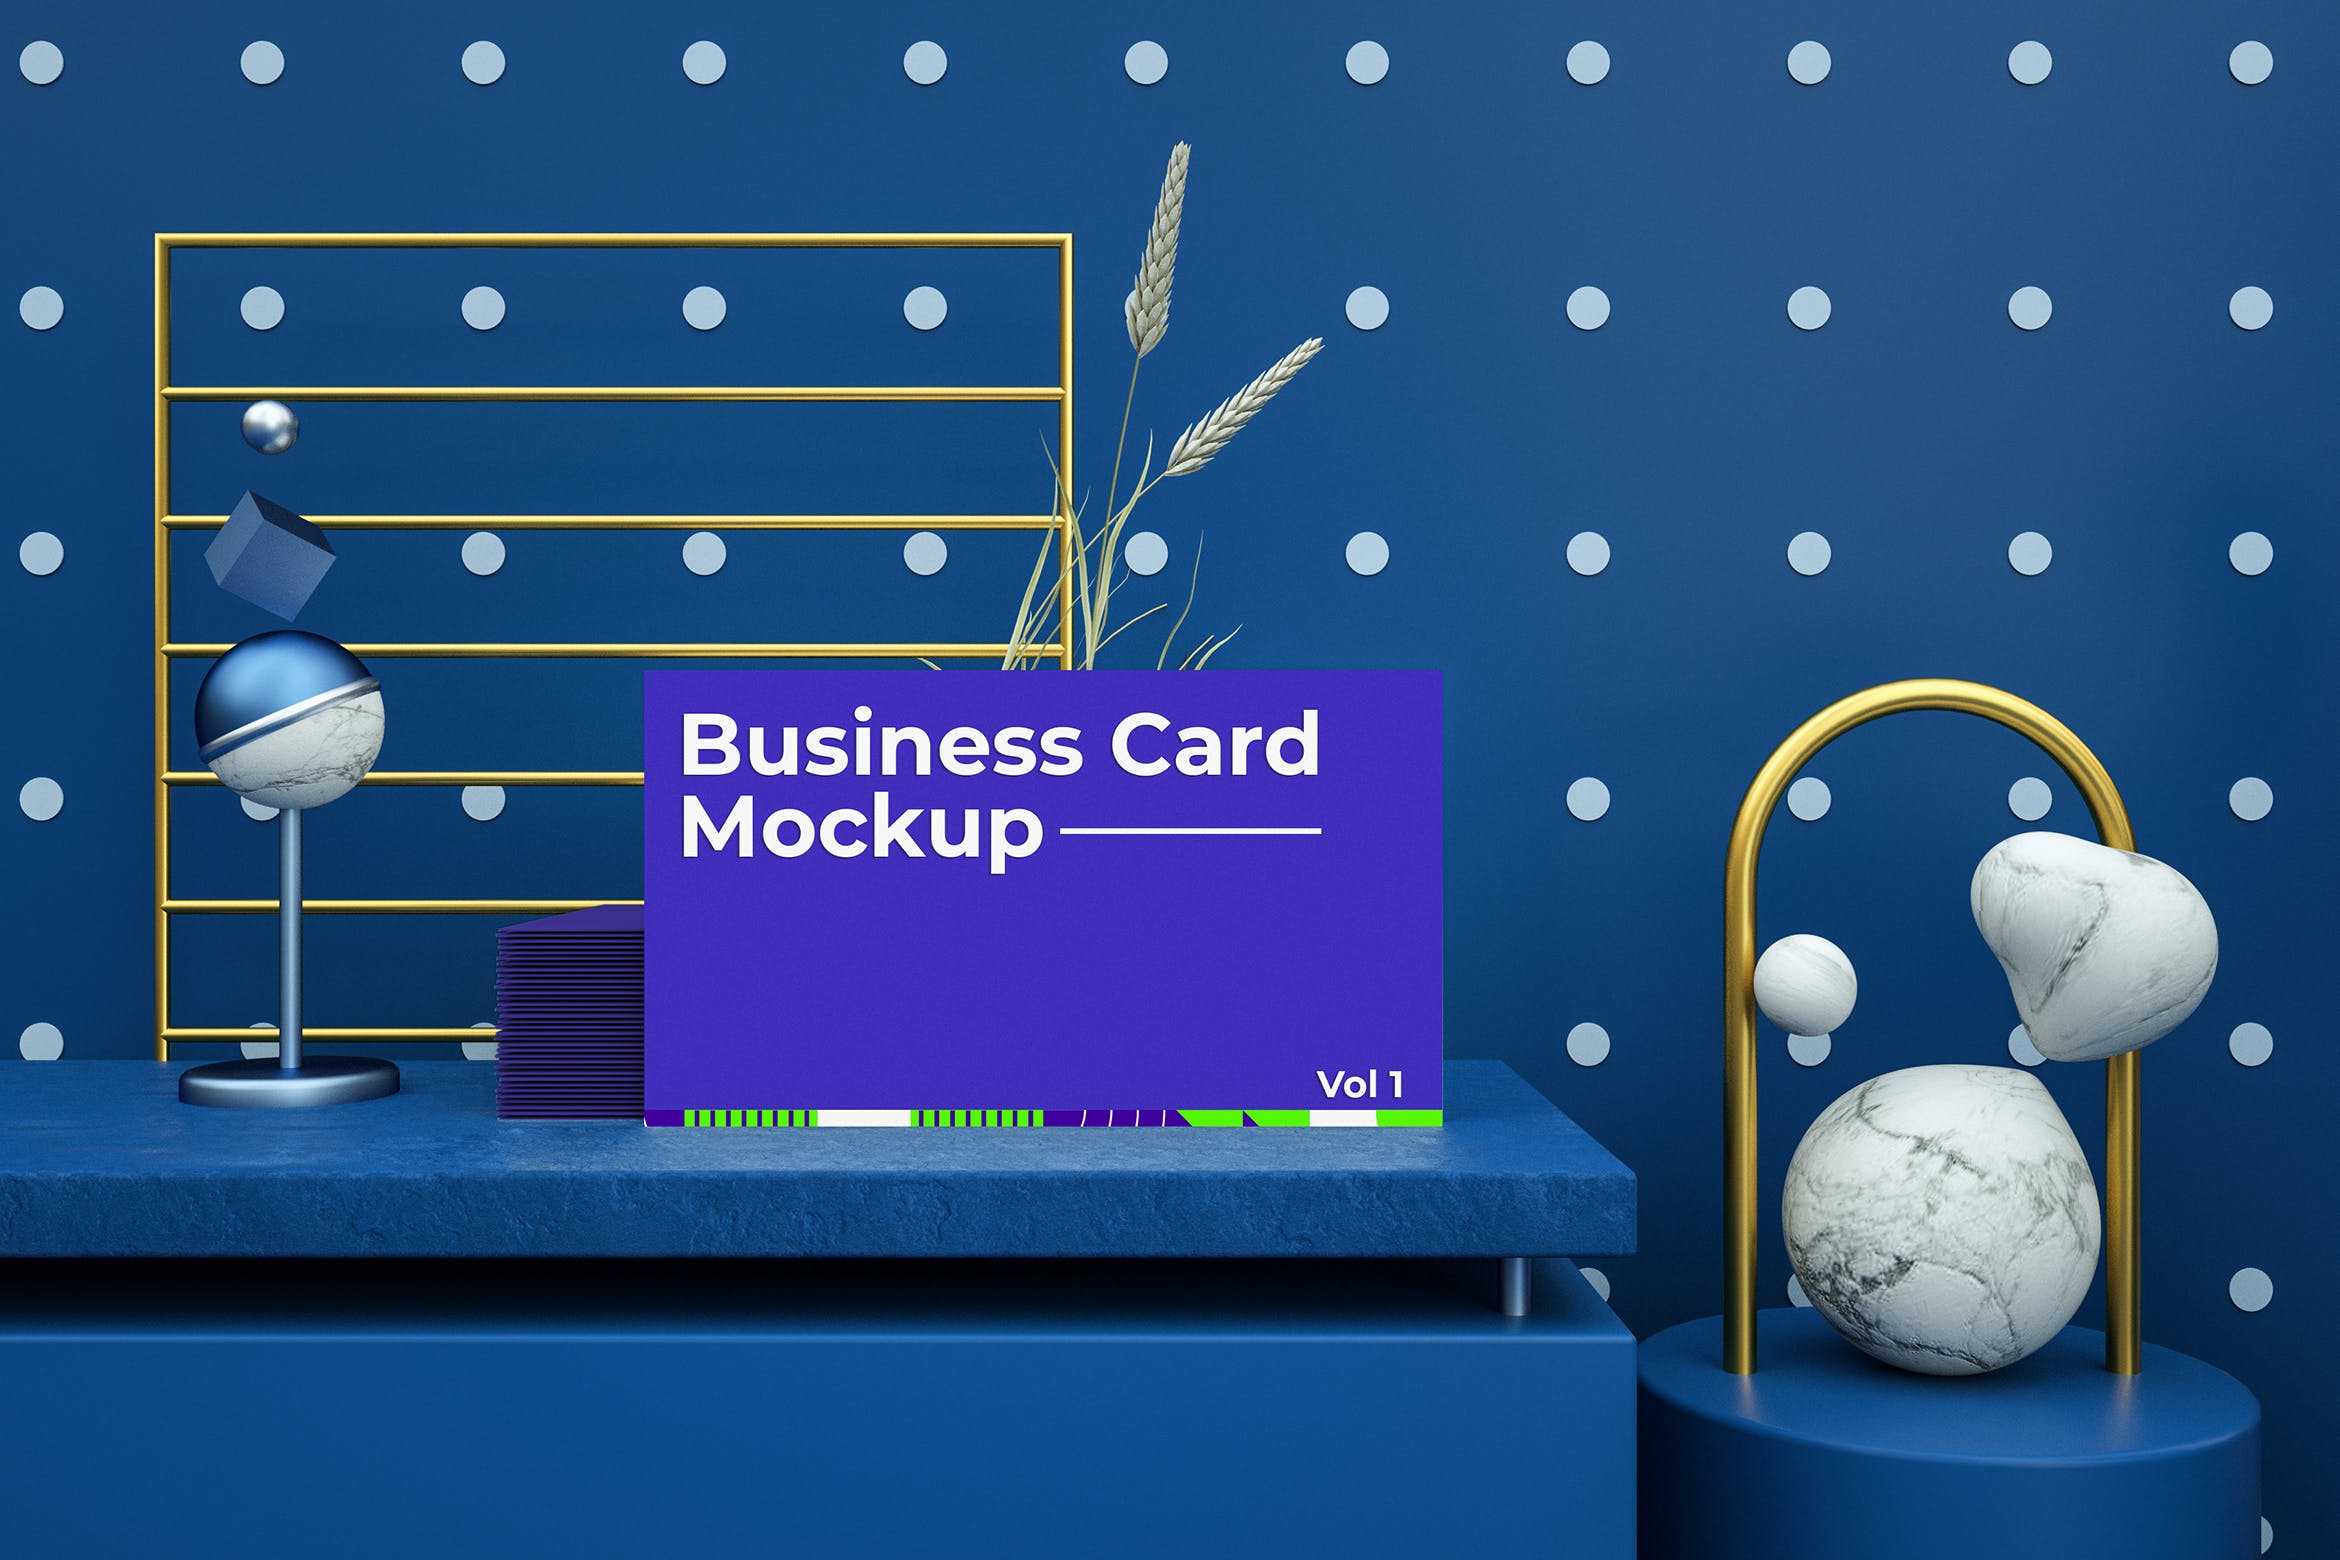 场景名片抽象元素展示样机模板v1 Abstract Business Card Mockup Vol 01设计素材模板